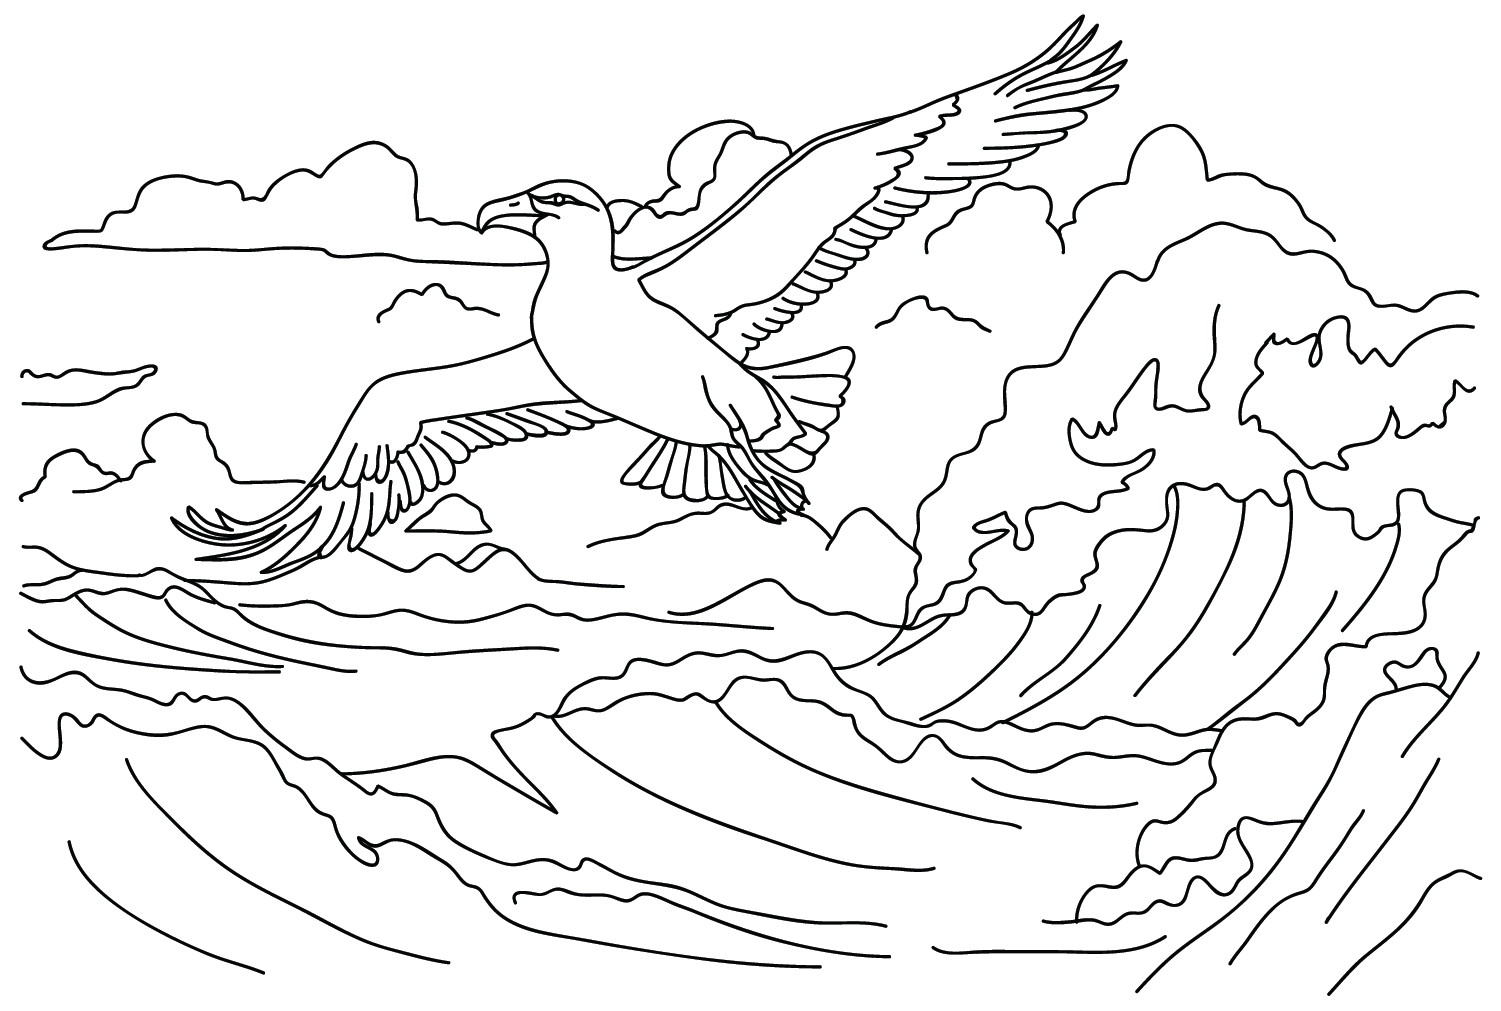 Disegnare l'albatro da colorare da Albatross